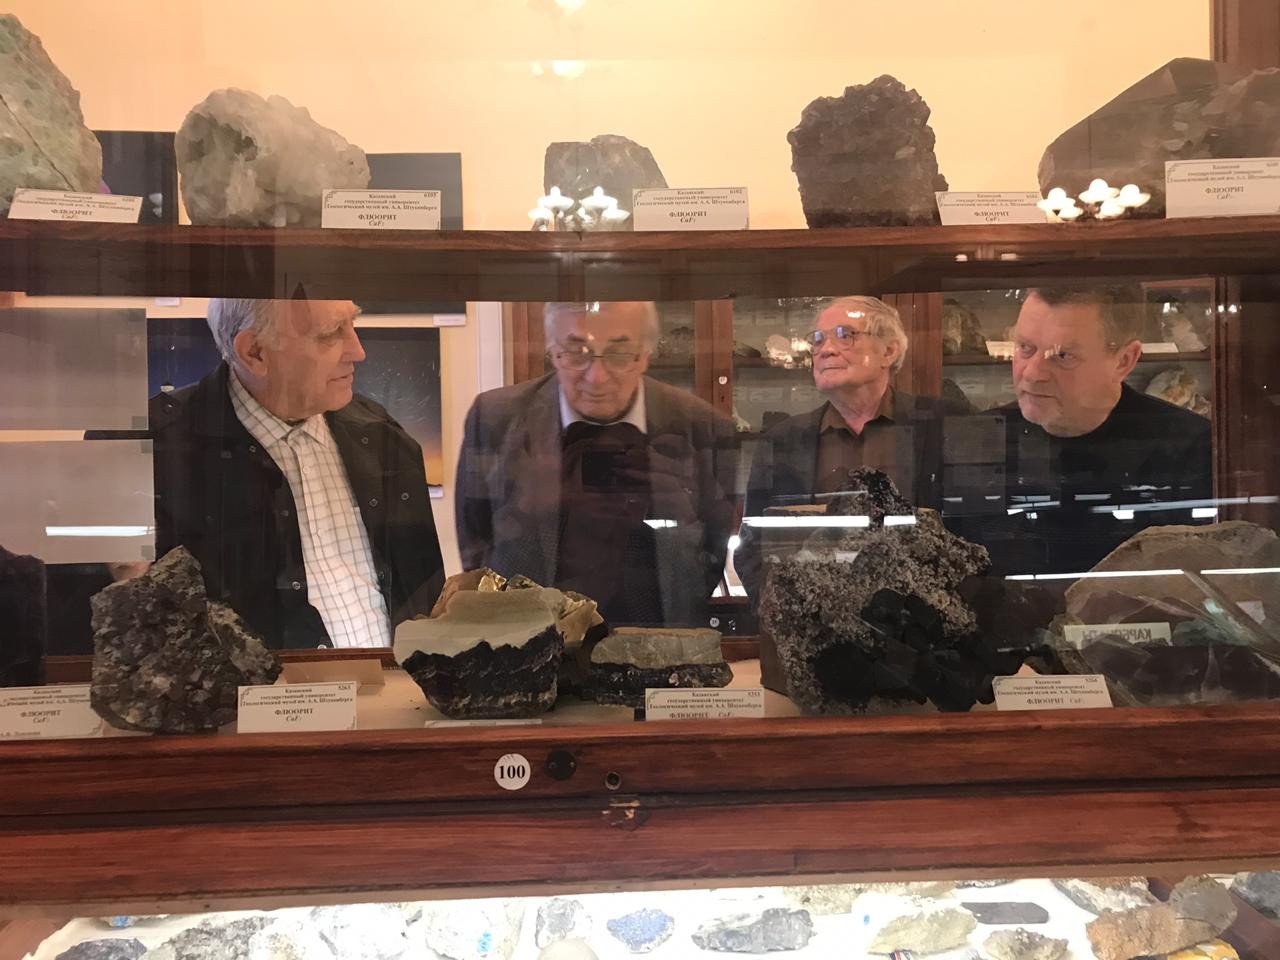 Организаторы и участники первой российской метеоритной экспедиции в Антарктиду посетили Казанский федеральный университет